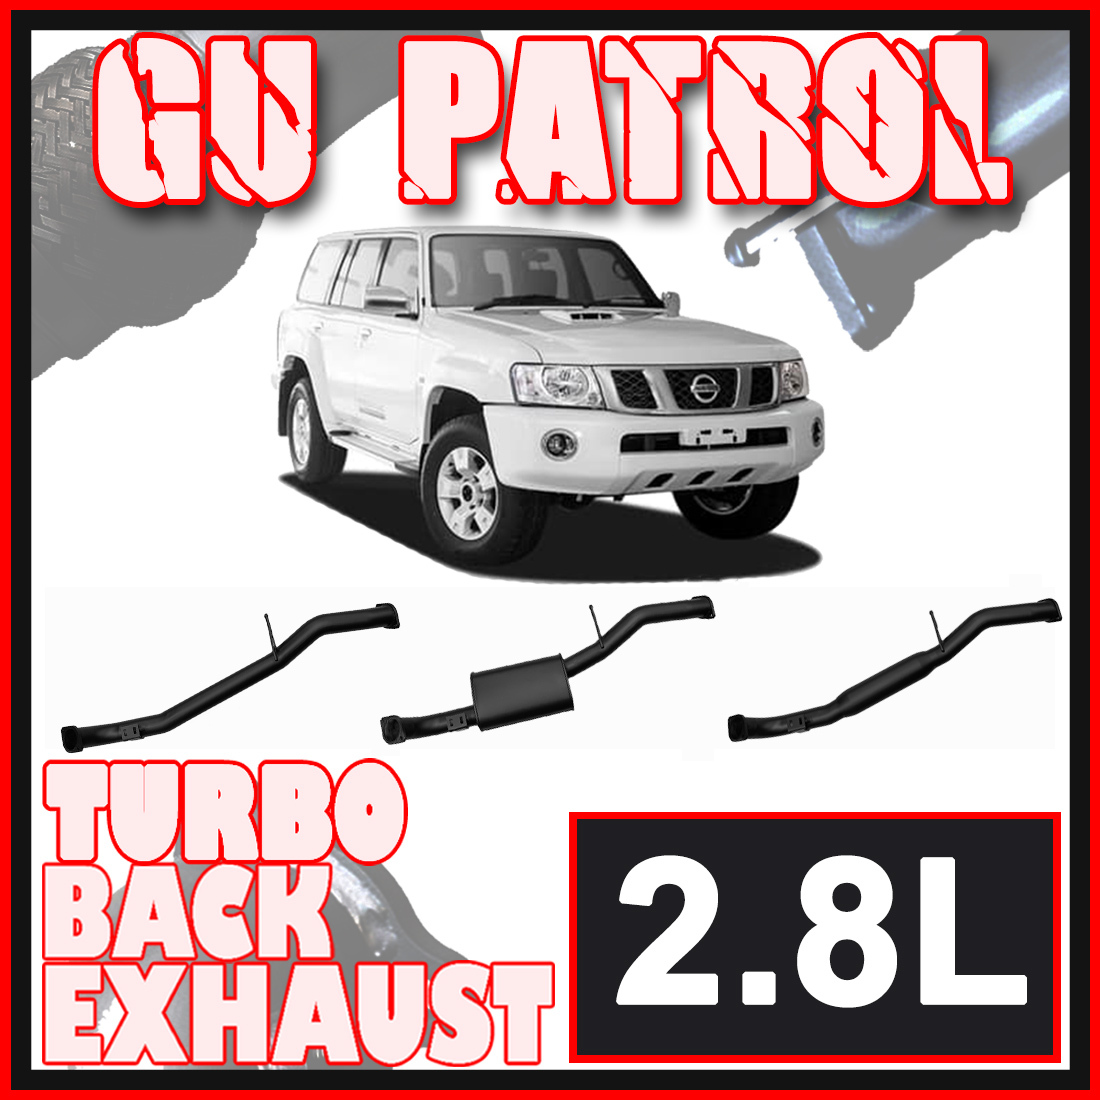 Nissan Patrol GU Wagon 2.8L Ignite Exhaust image